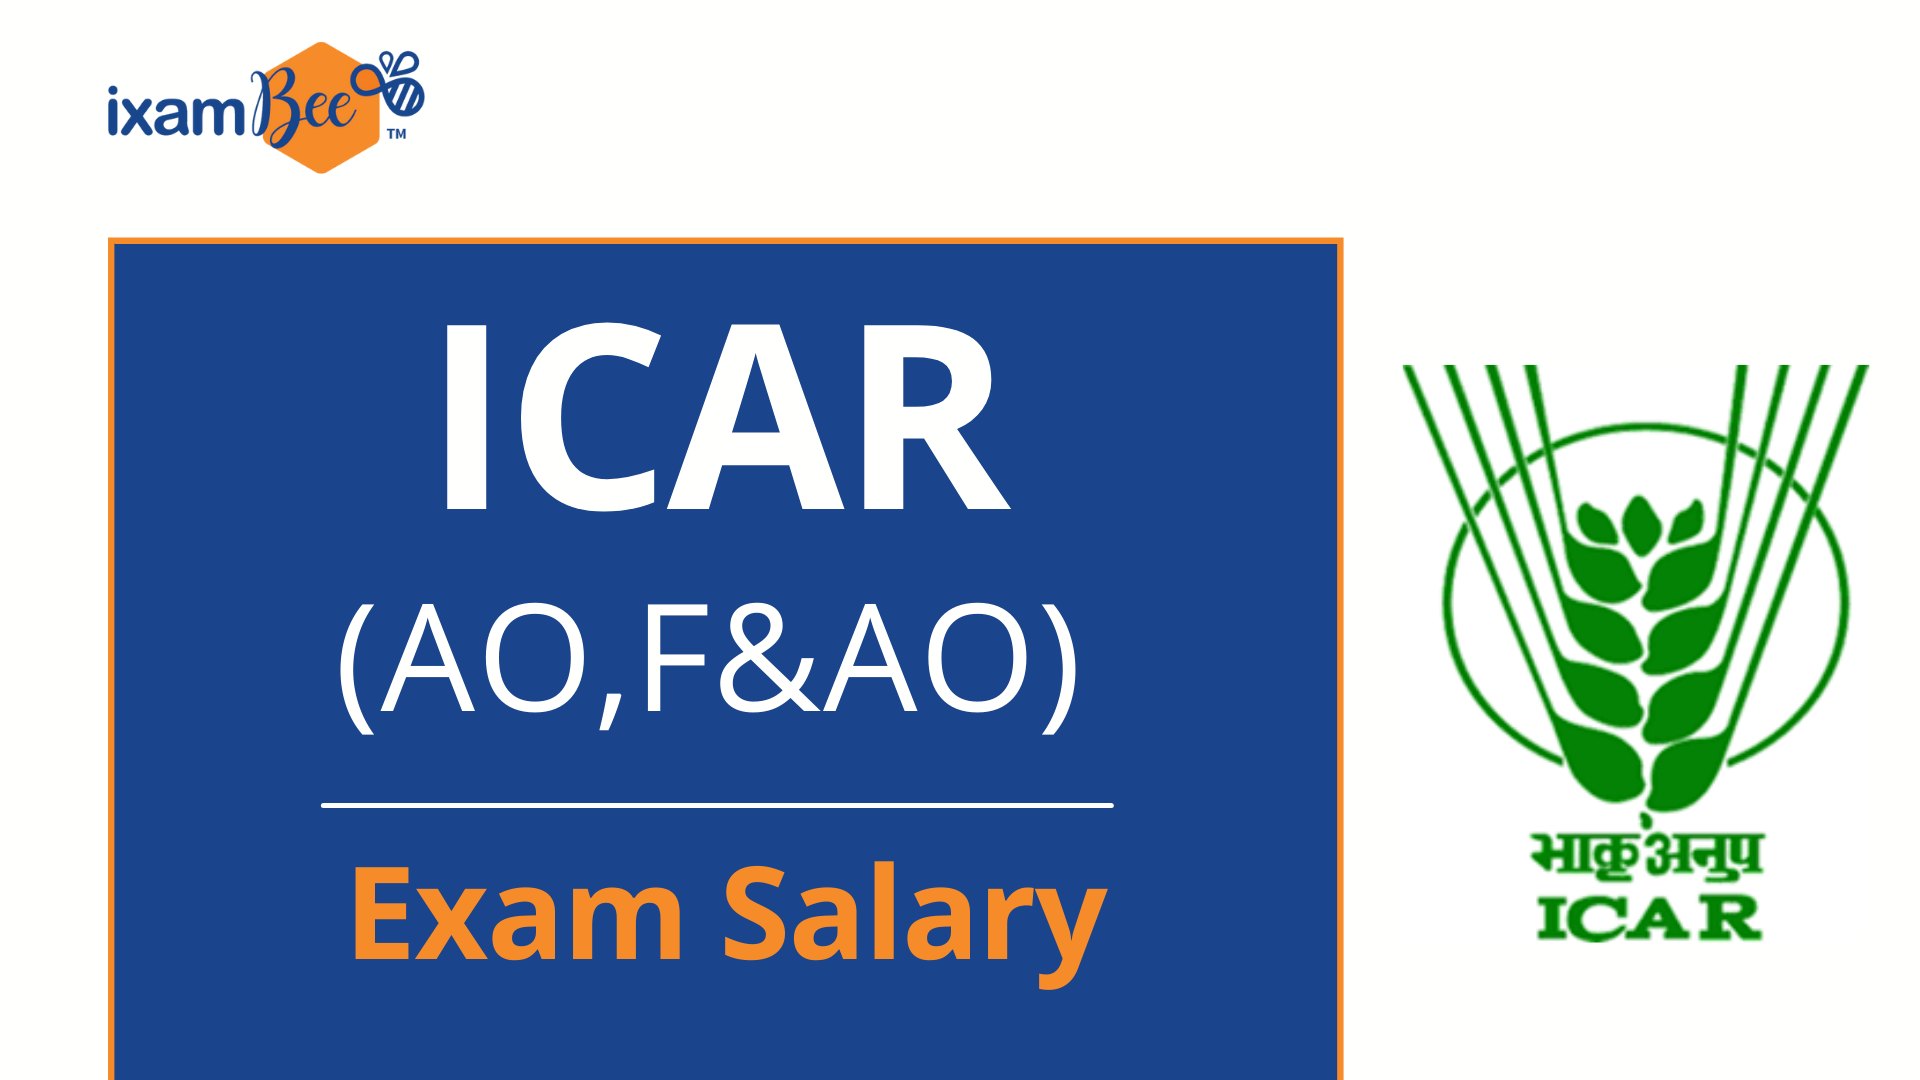 ICAR salary